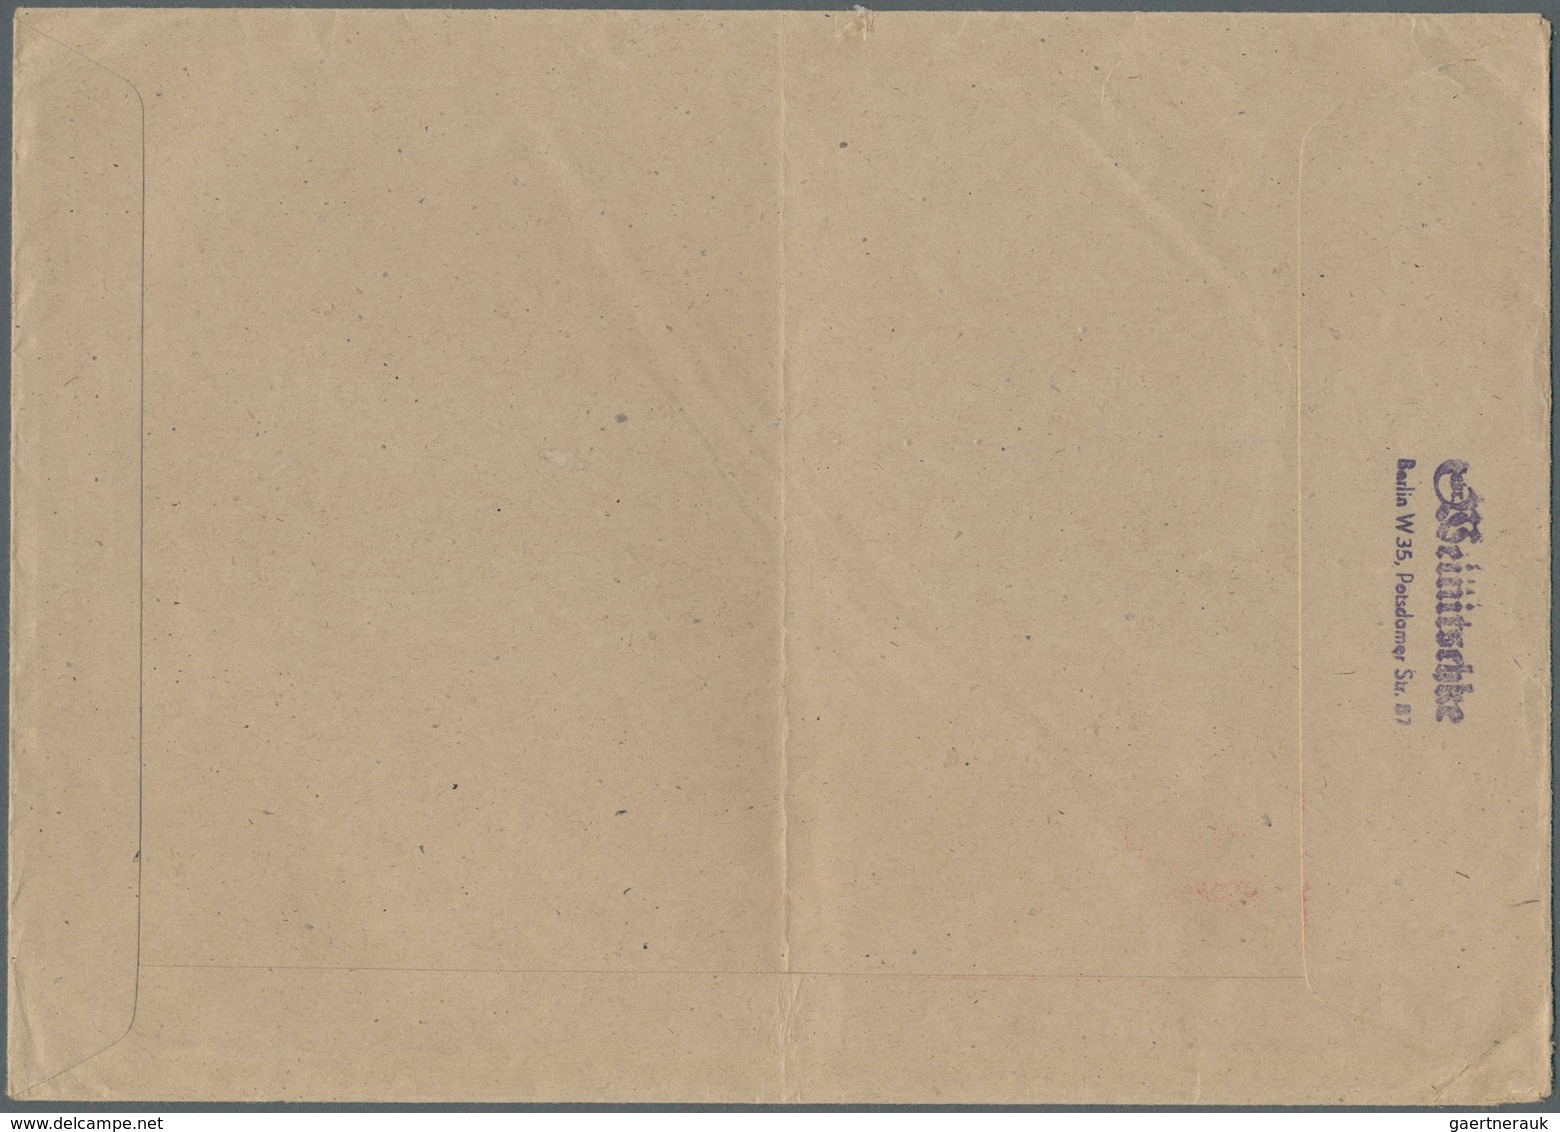 Berlin - Vorläufer: 1948: Umschlag Ca. 23 X 16,5 Cm Als Fern-Doppelbrief 48 Pf. ABSENDER-FREISTEMPEL - Covers & Documents